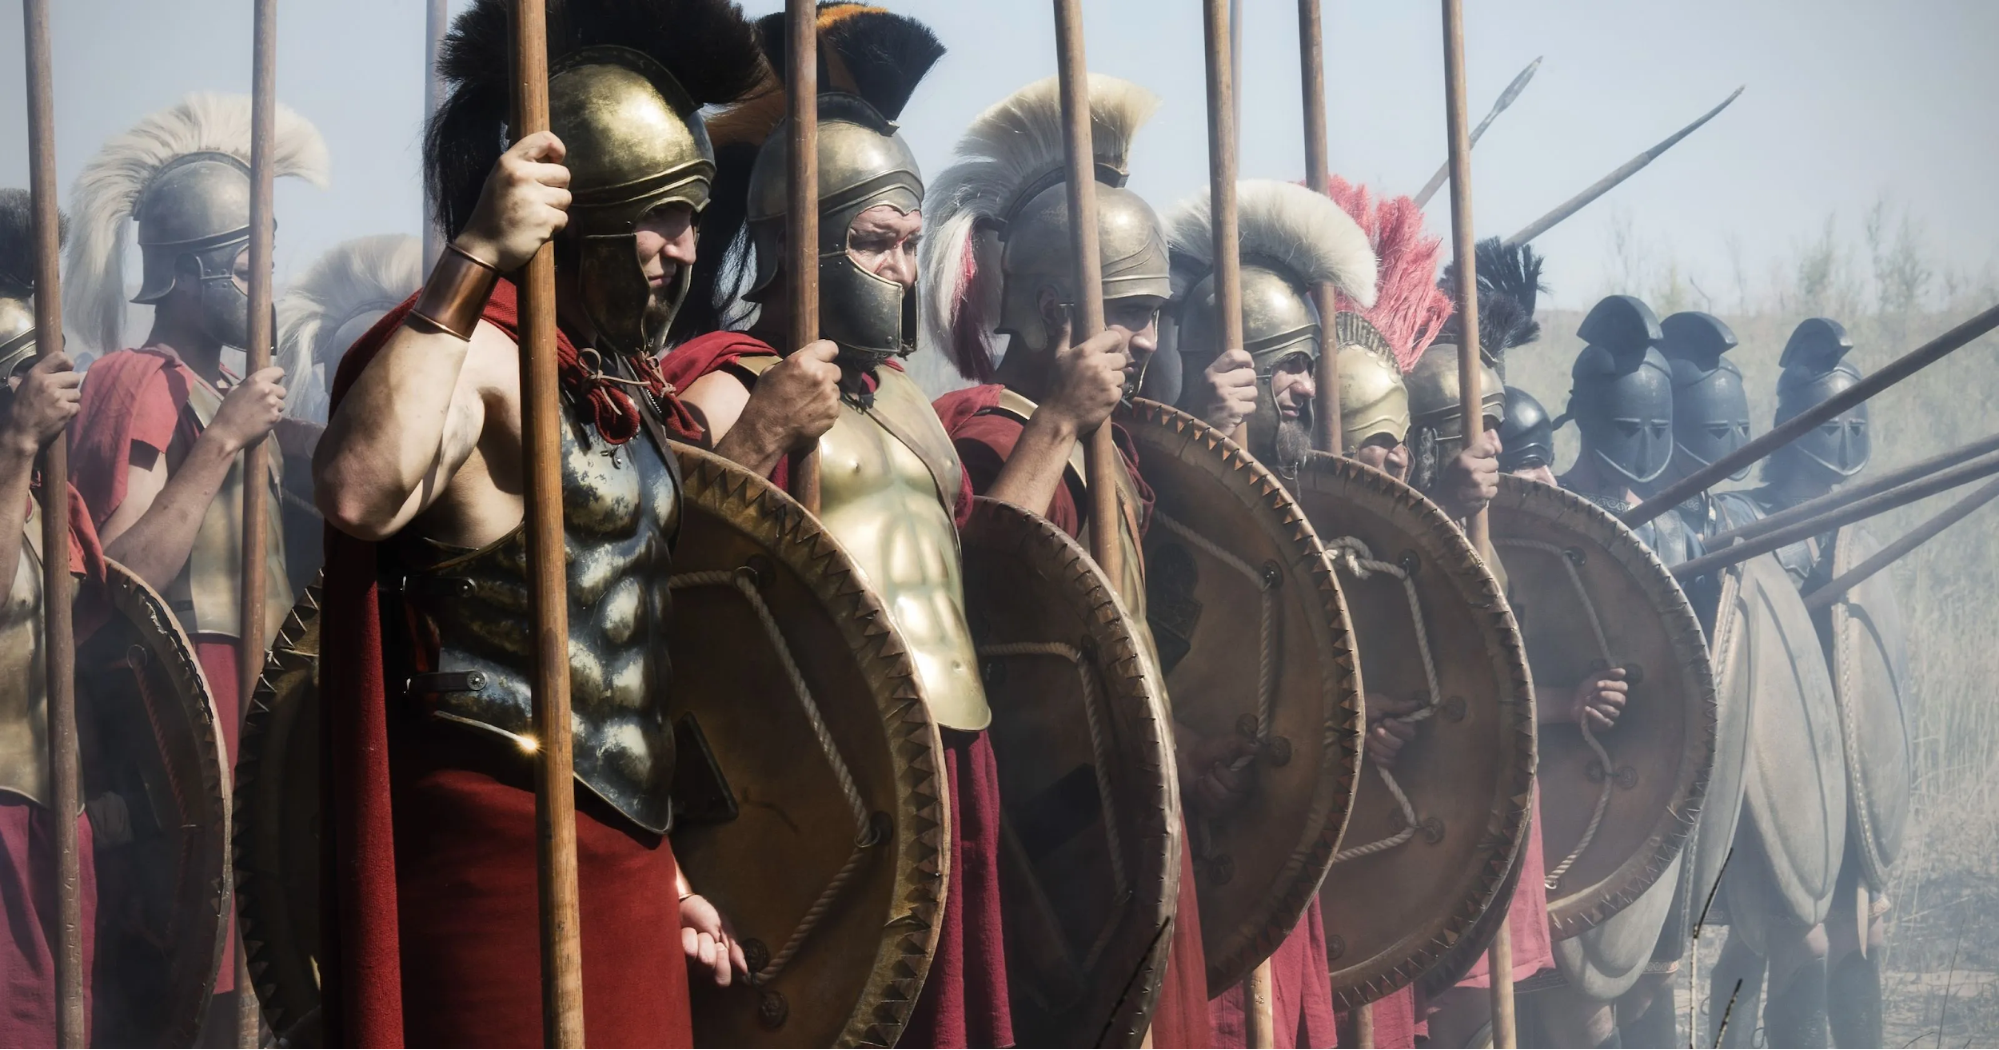 Спартанцы: как жили самые суровые воины древности